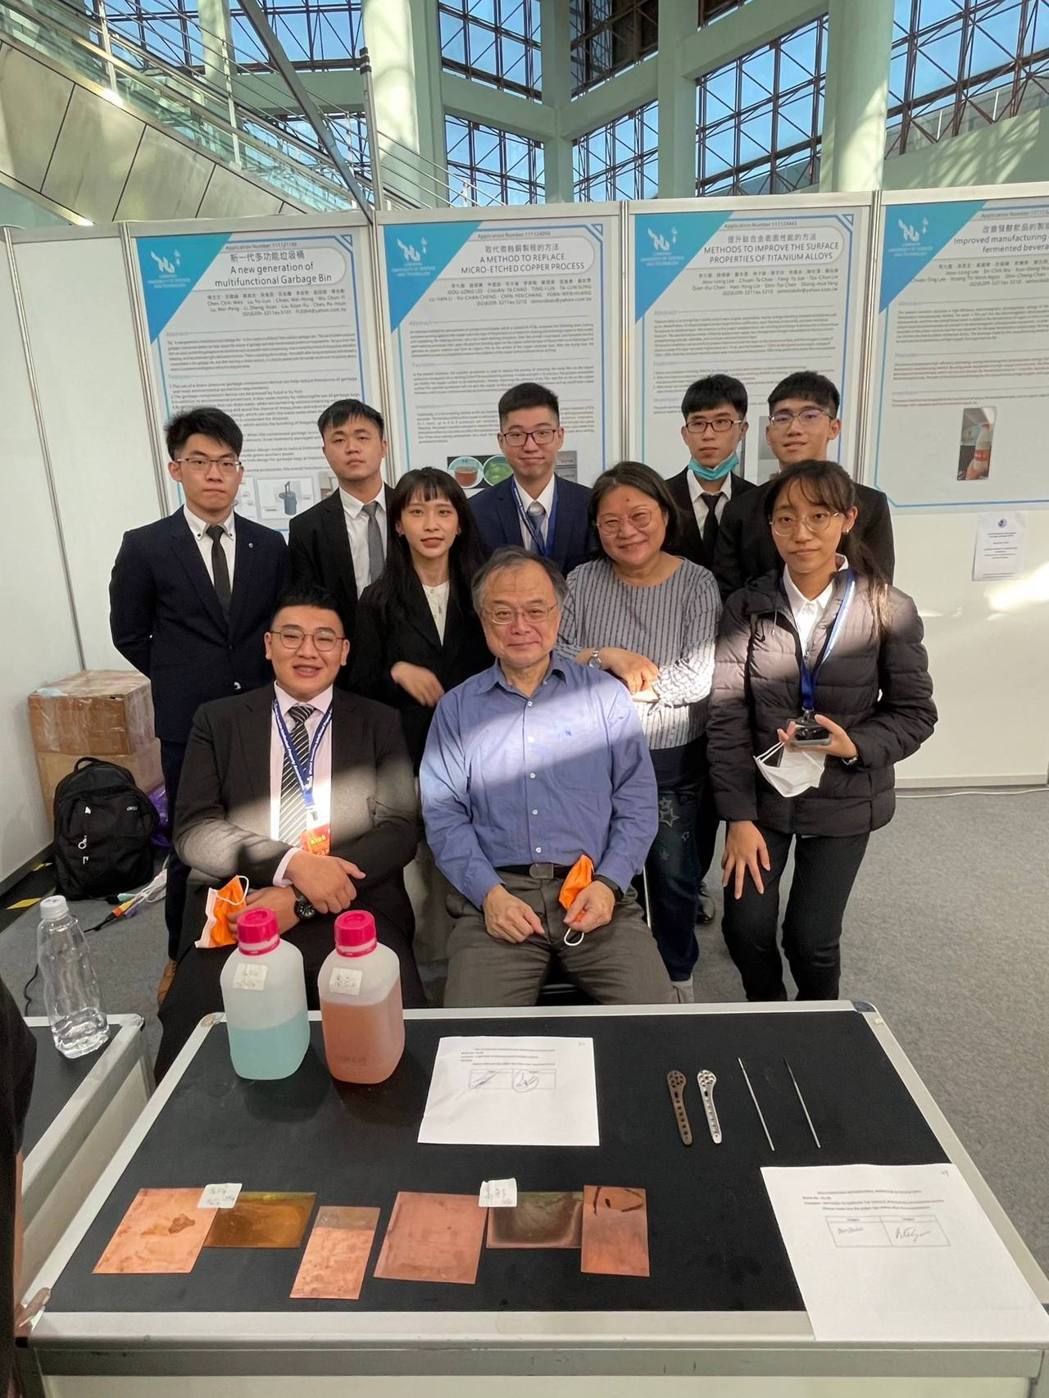 李九龍、趙娟黛師生作品「提升鈦合金表面性能的方法」獲金牌及WIIPA協會特別獎。